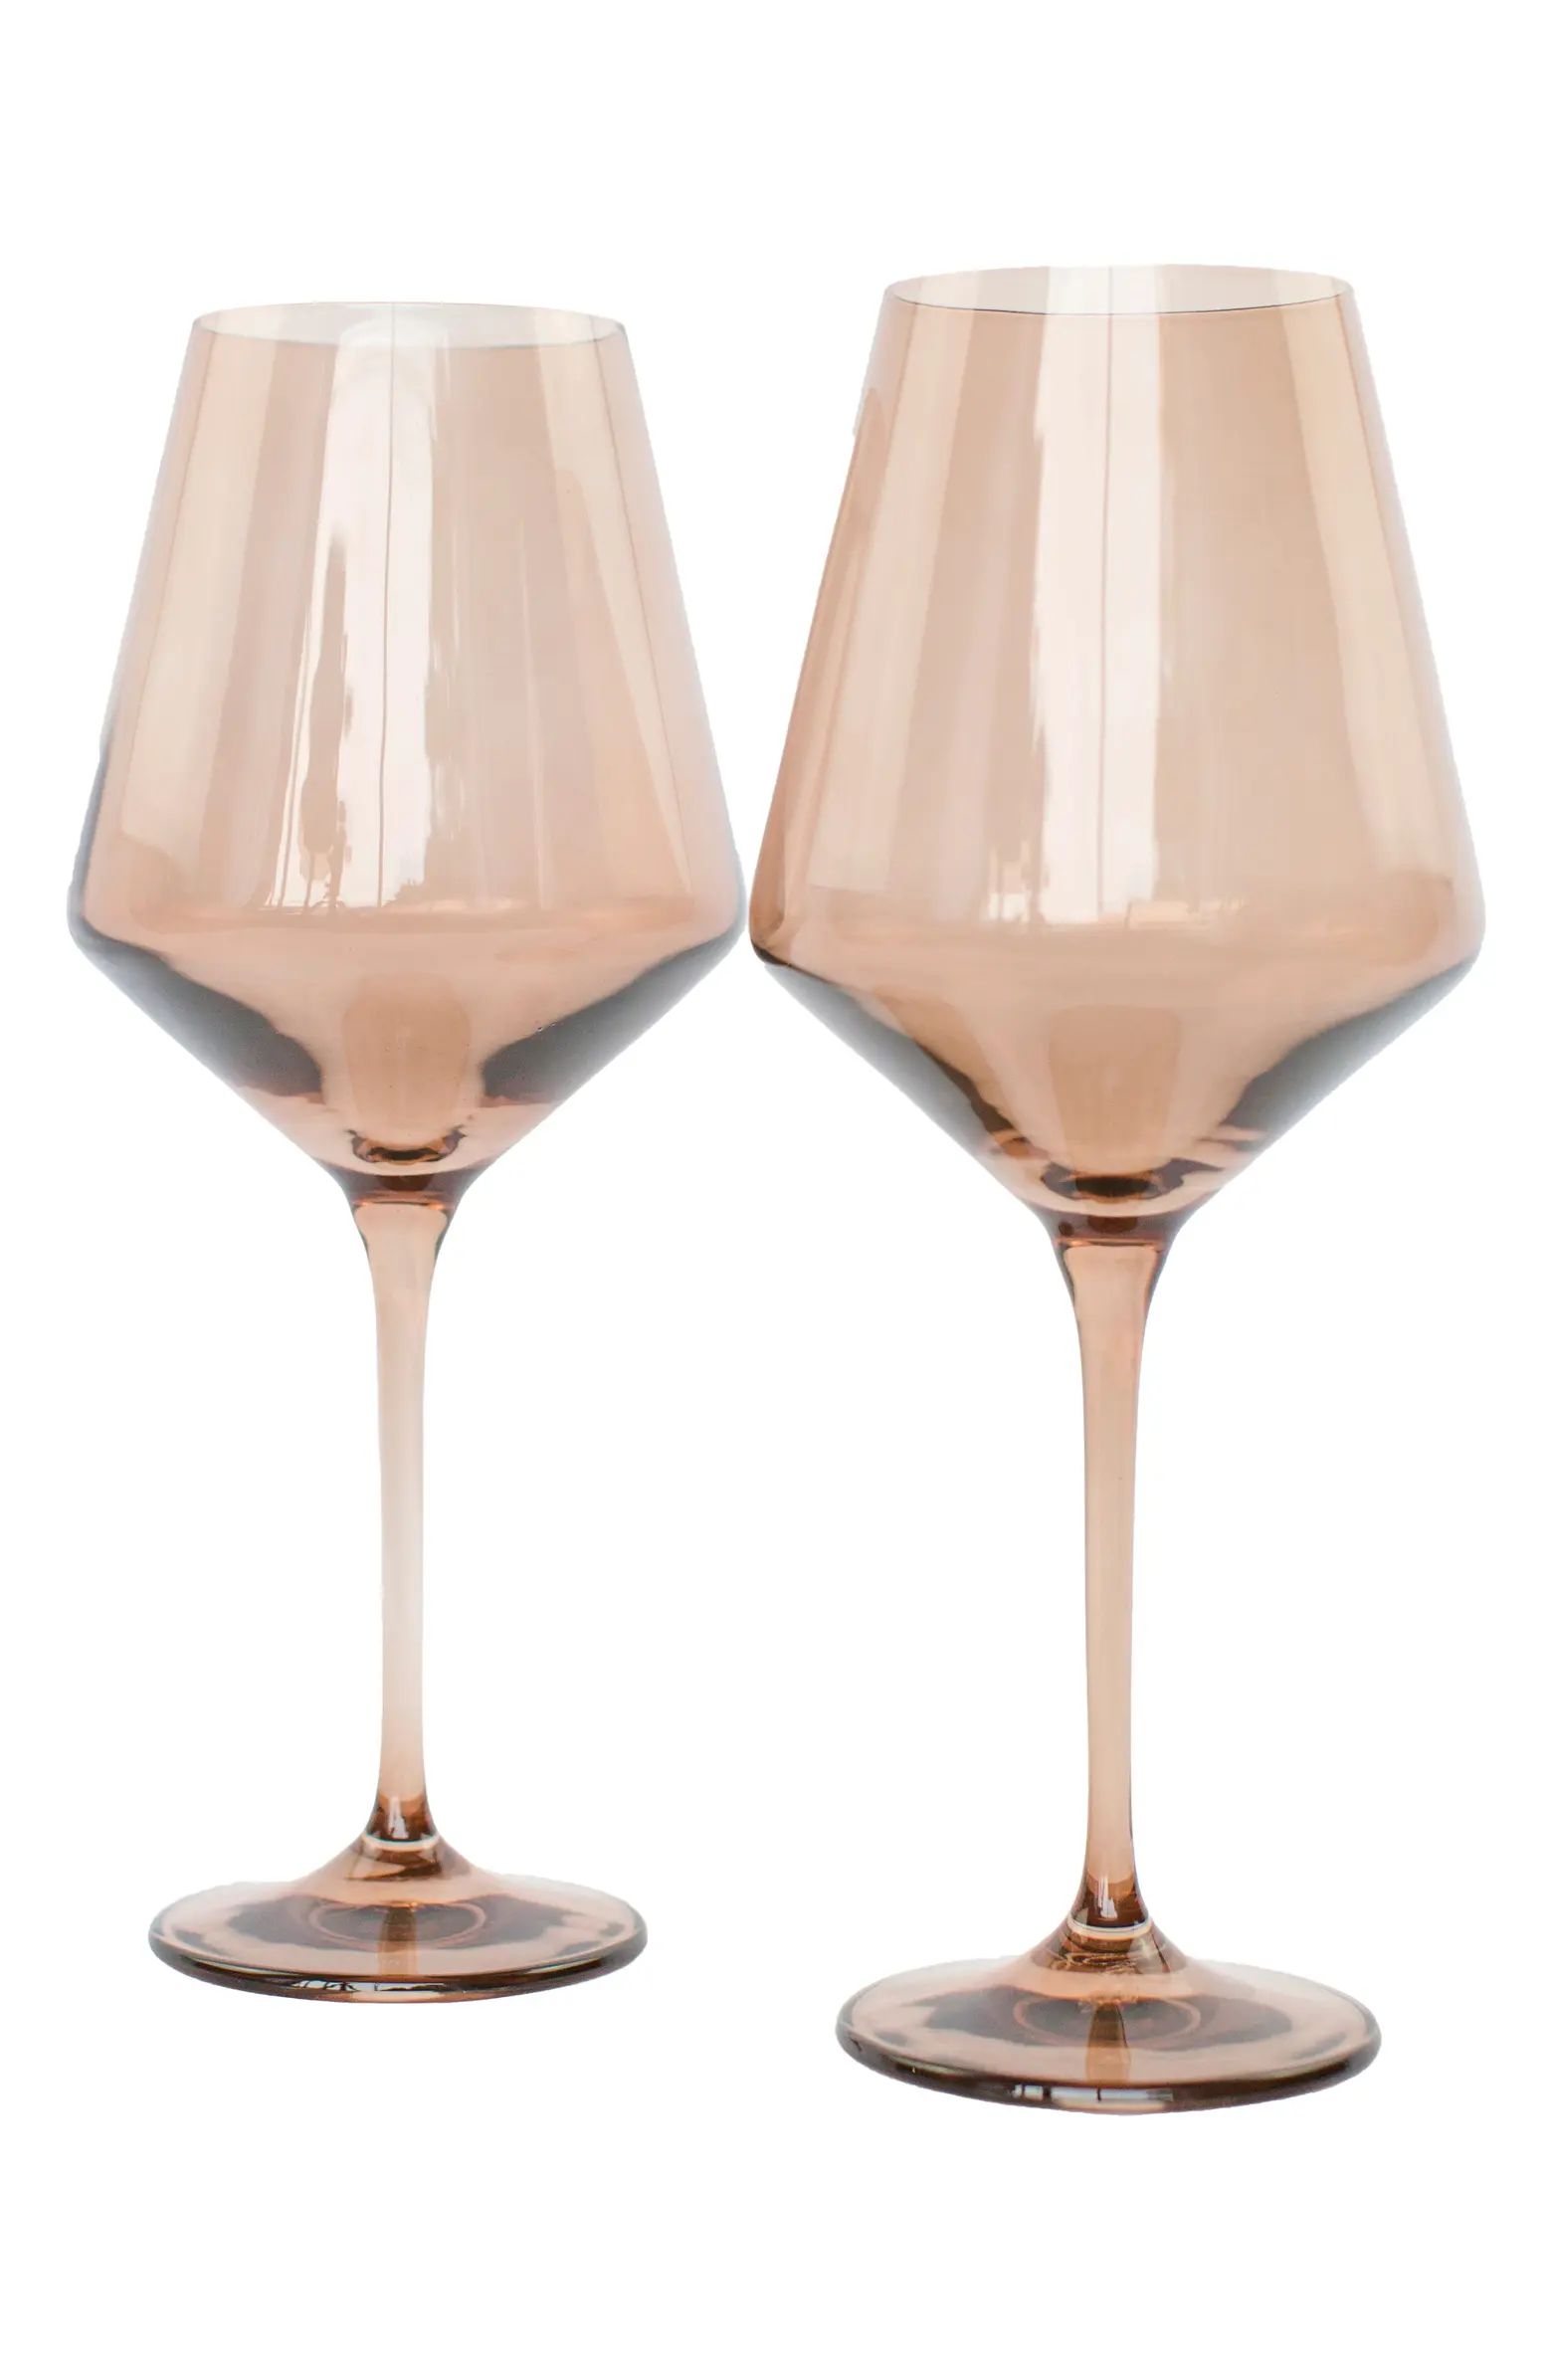 Estelle Colored Glass Set of 2 Stem Wineglasses | Nordstrom | Nordstrom